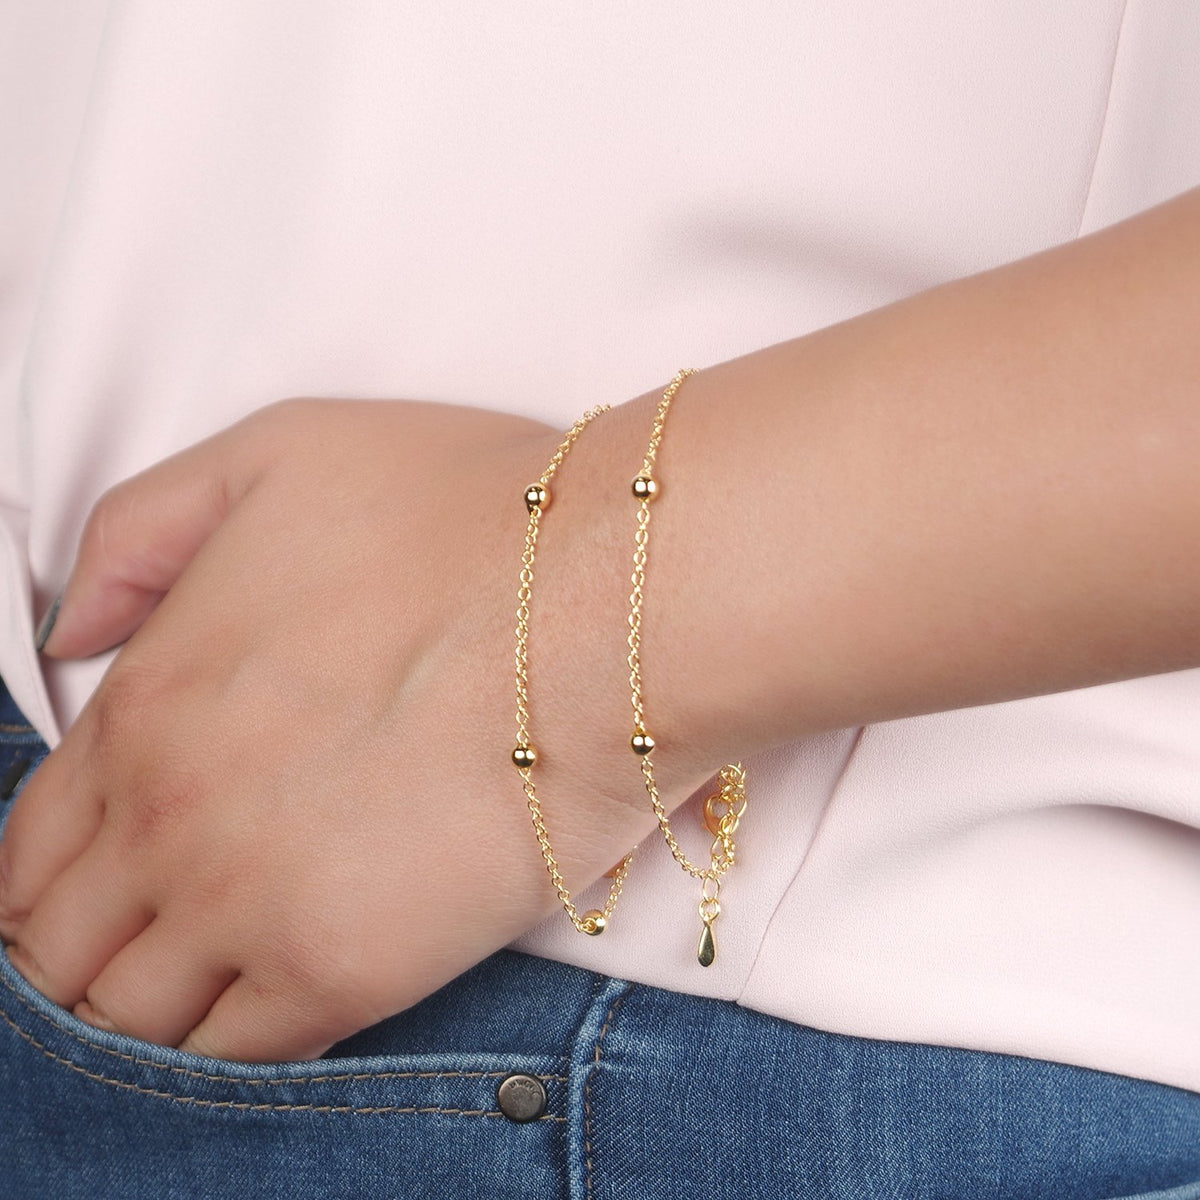 Best Friends Bracelet - Dear Ava, Jewelry / Bracelet